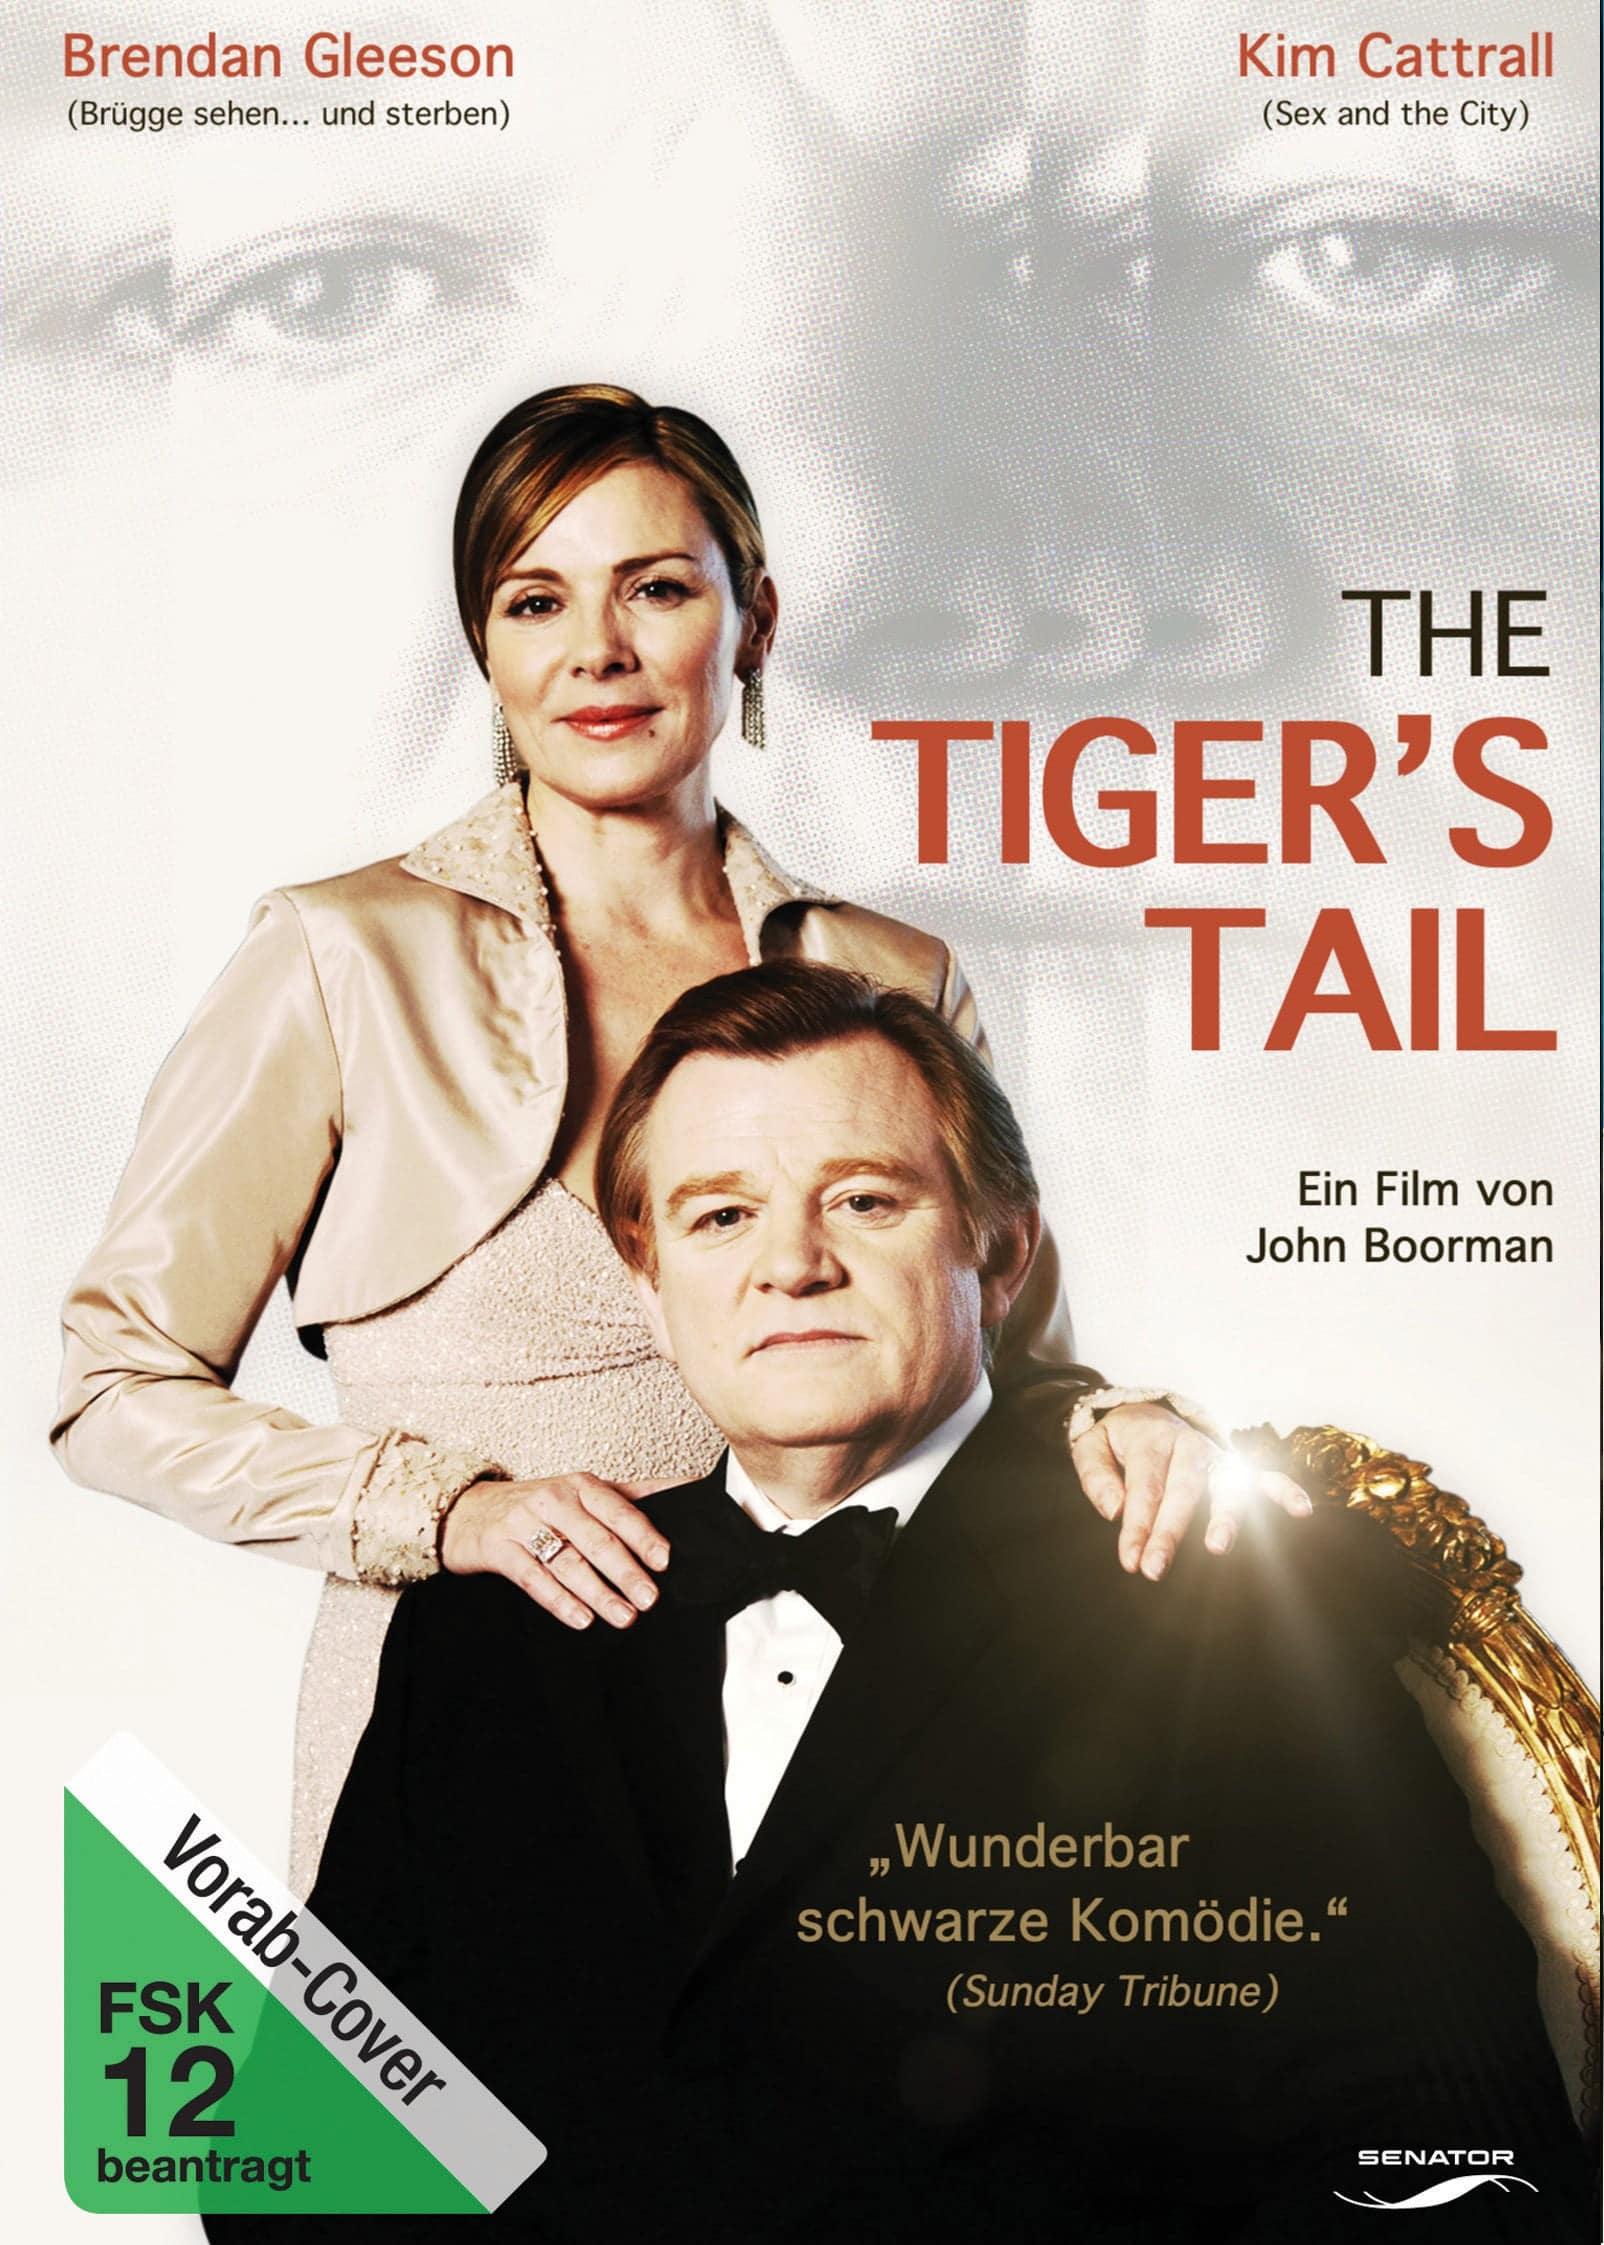 Plakat von "The Tiger's Tail"